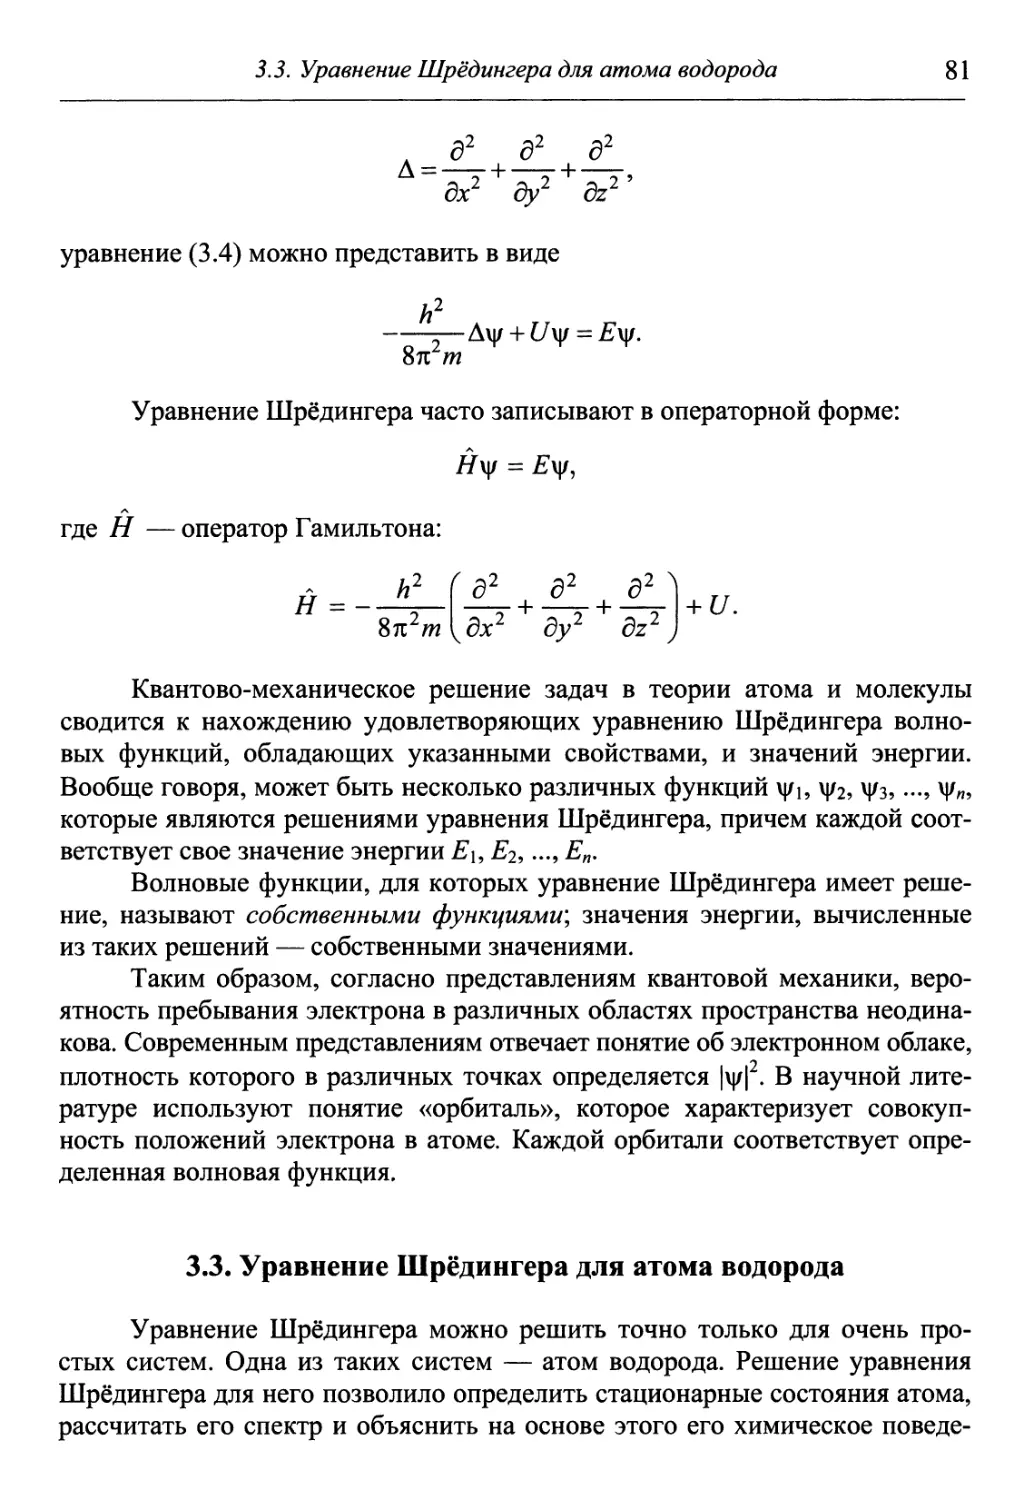 3.3. Уравнение Шрёдингера для атома водорода